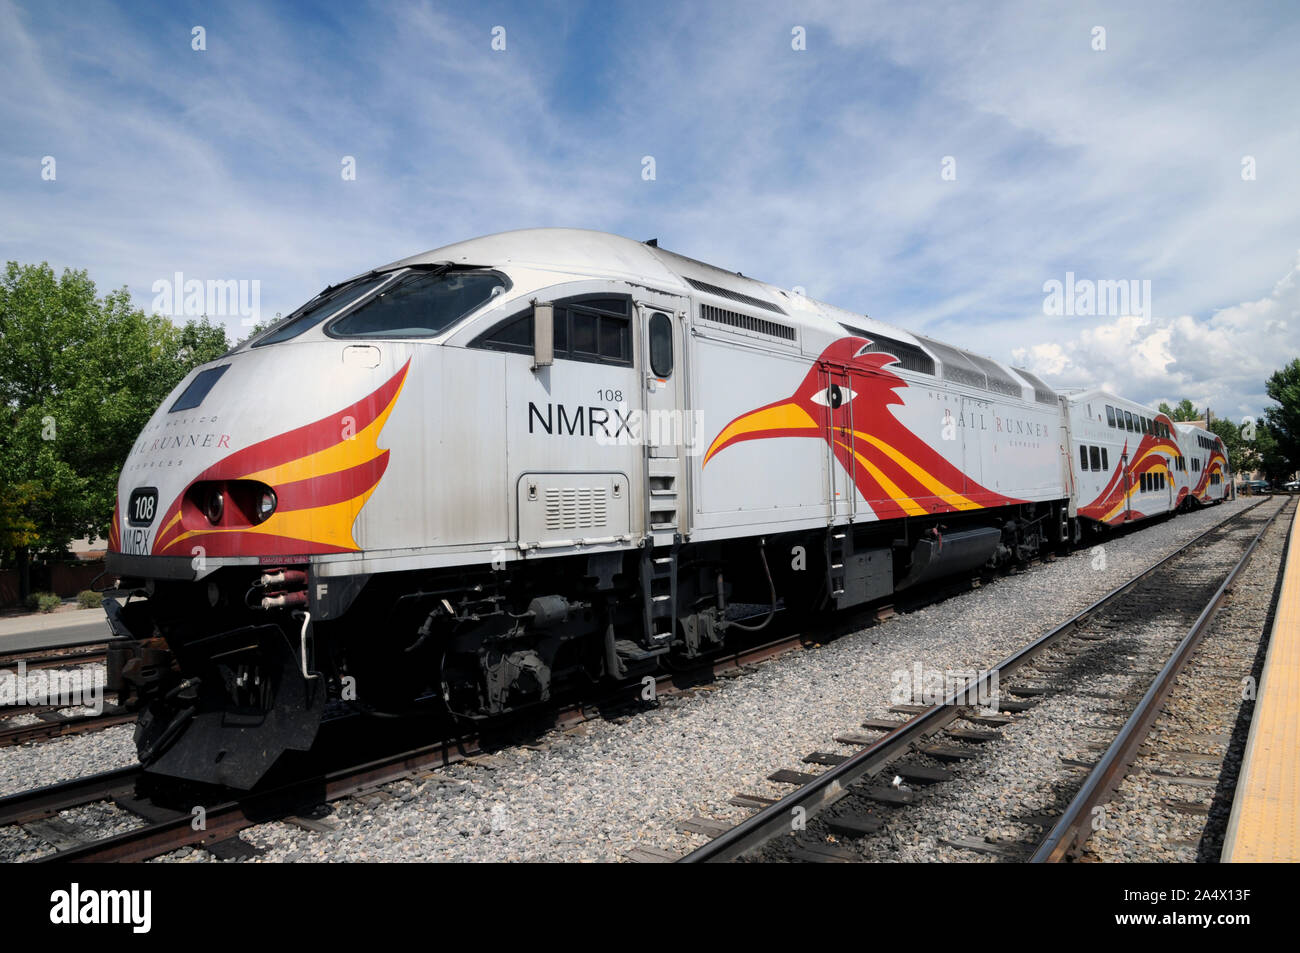 Un nuovo Messico Rail Runner Express a Santa Fe Railyard. Si tratta di un " commuter " sistema ferroviario che serve le aree metropolitane di Santa Fe e di Alburqueque. Foto Stock